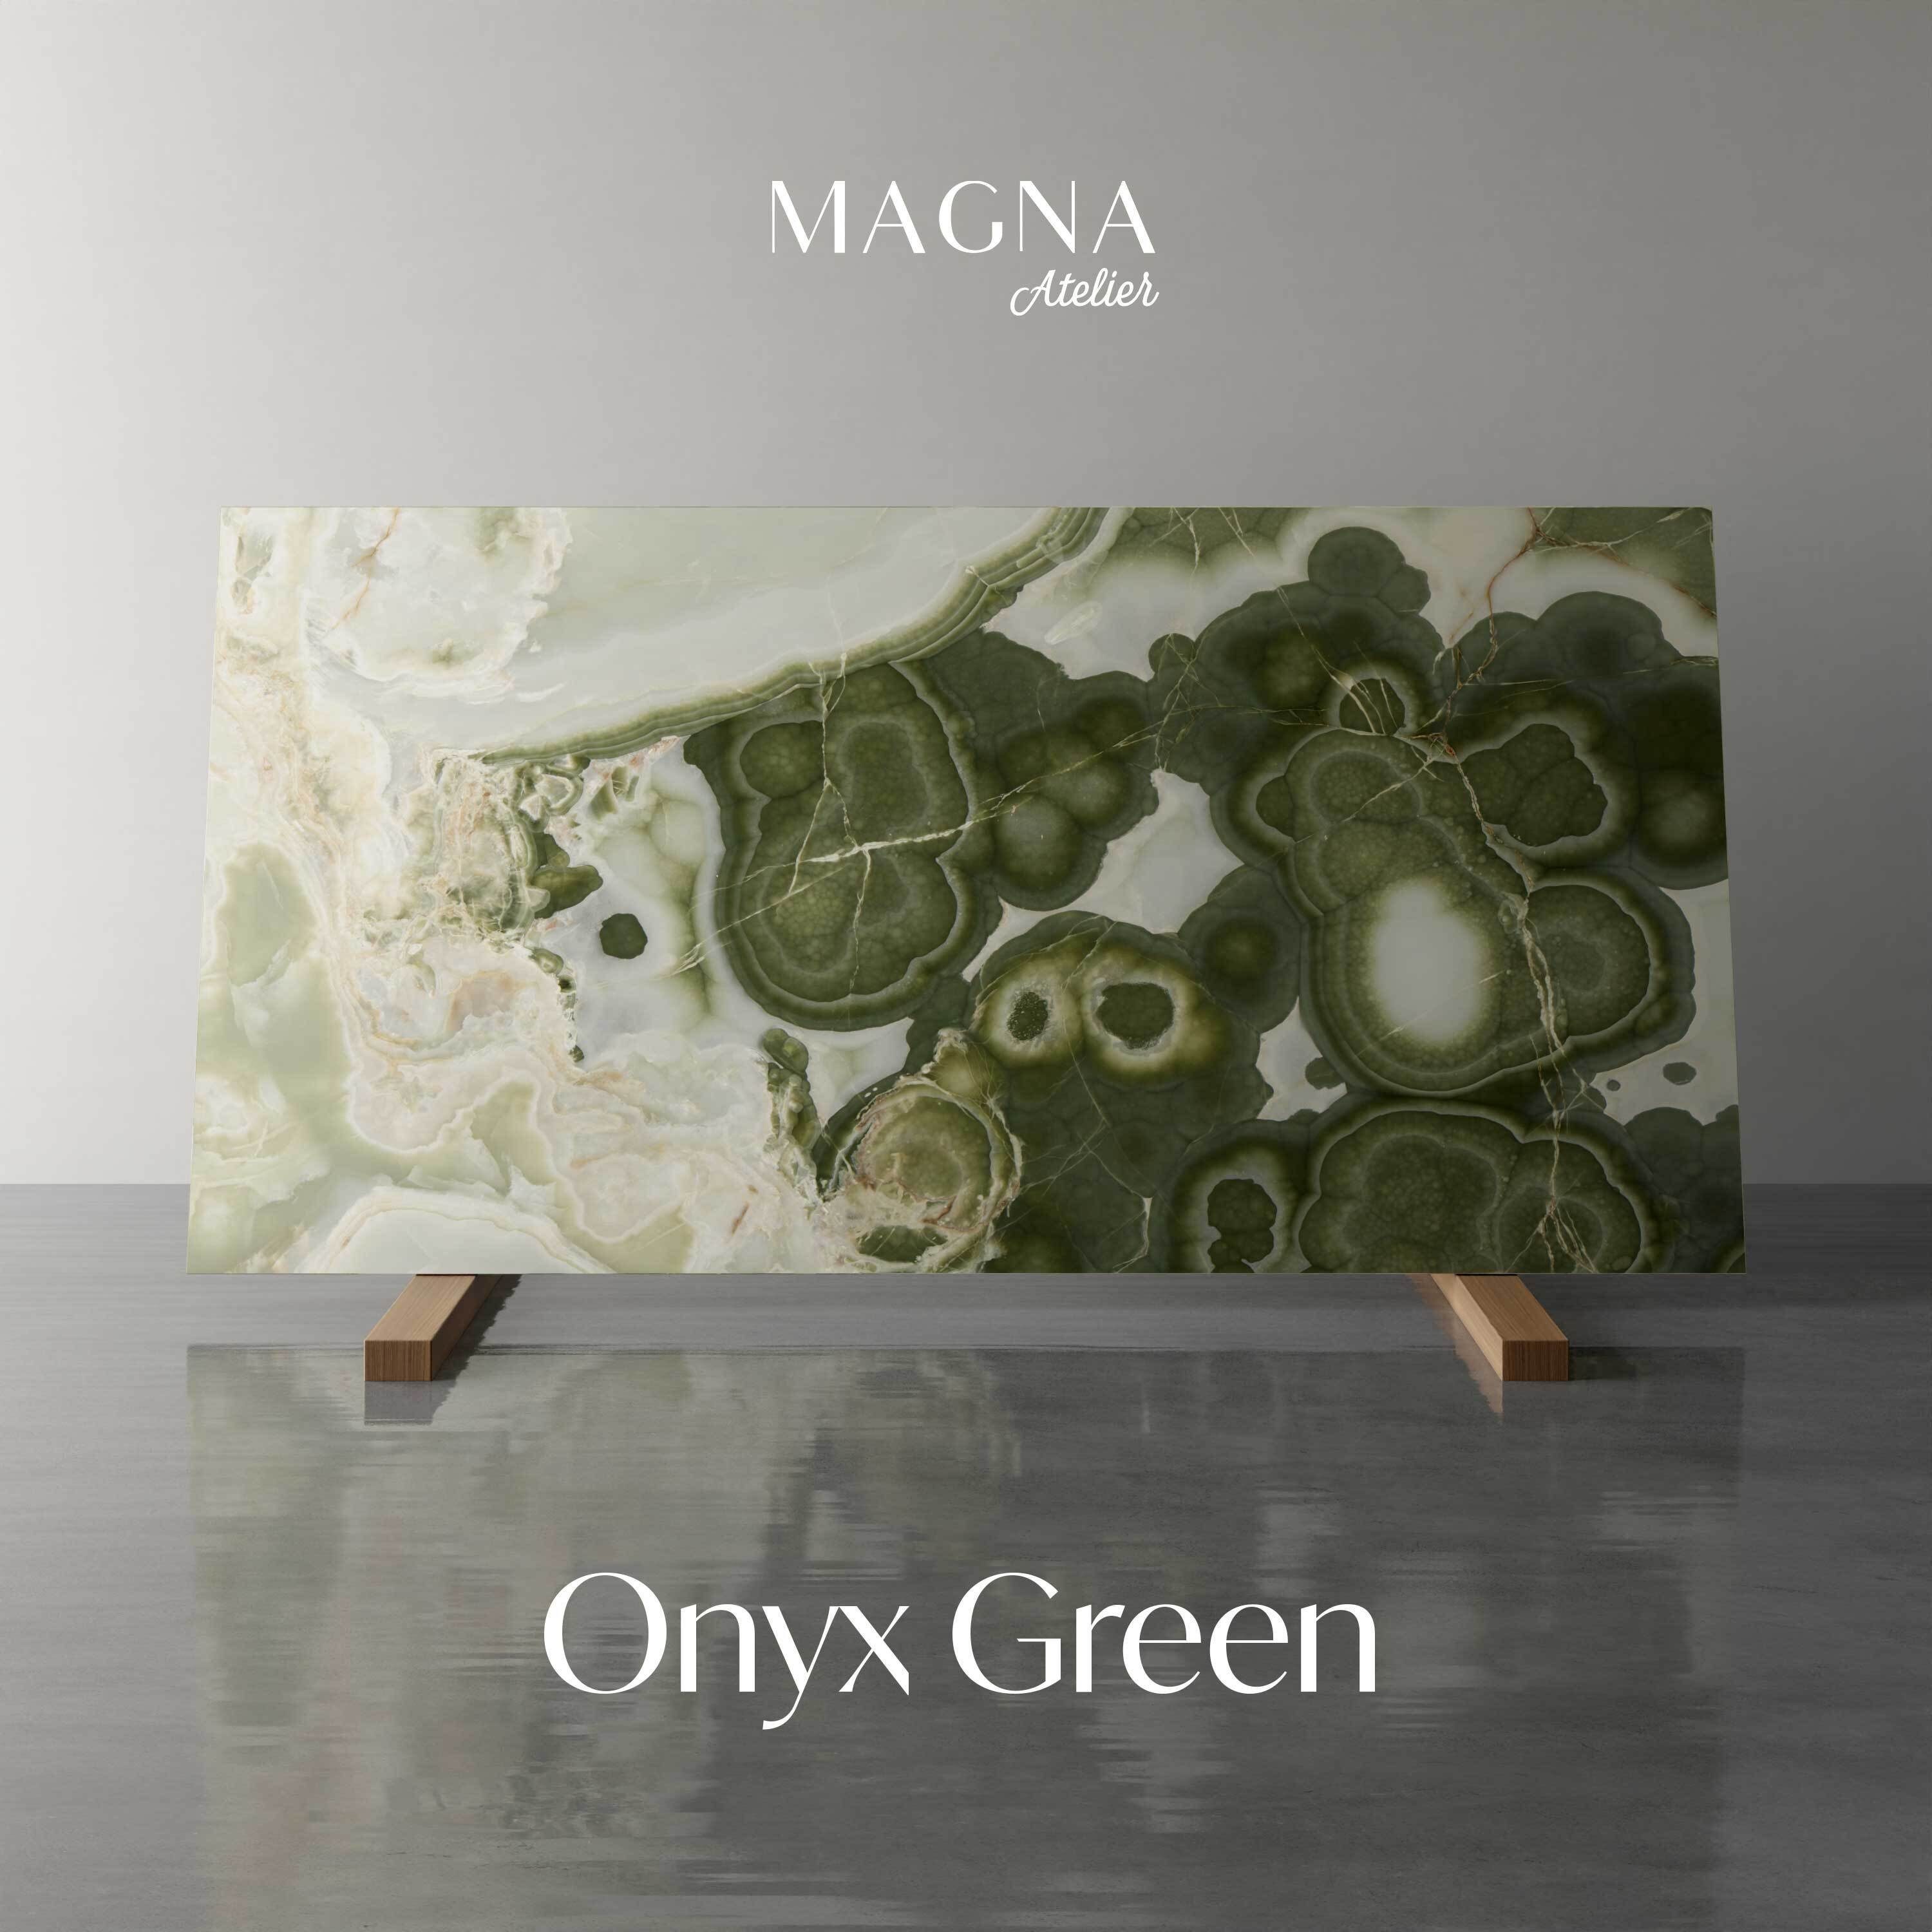 Atelier Esstisch Gestell, Onyx Green MAGNA rund, mit OCTAGON echter Mamor Ø120x76cm Esstisch ECHTEM MARMOR,